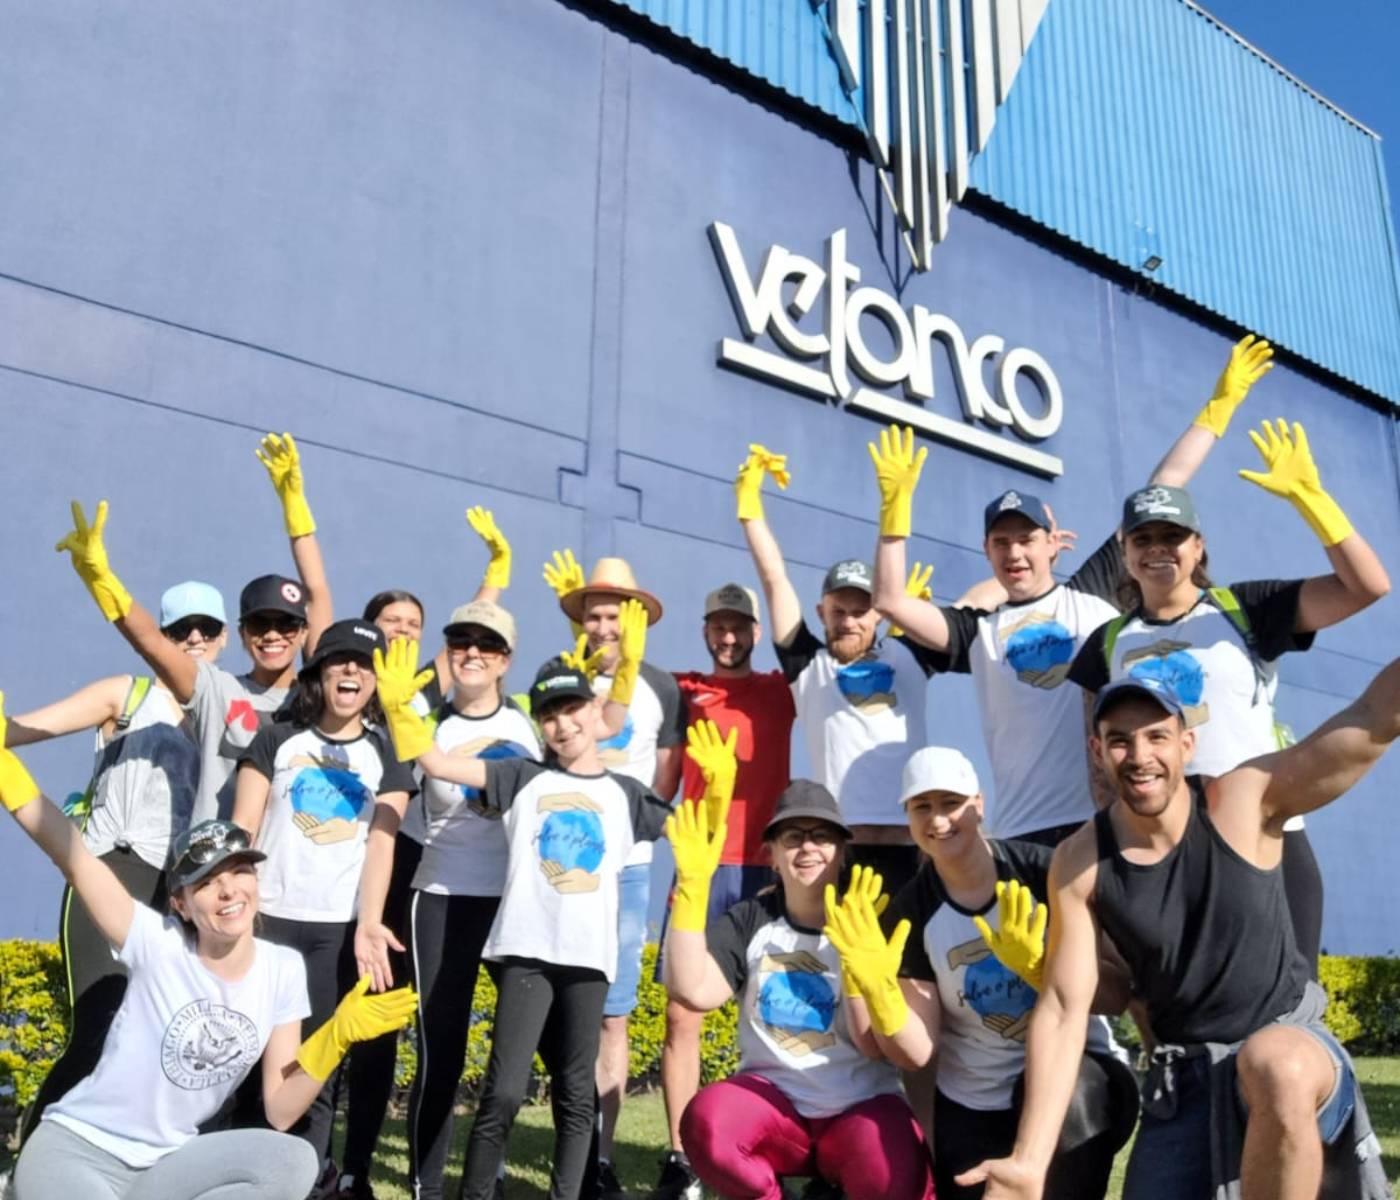 Vetanco Brasil: segunda edição da Caminhada Ecológica recolhe 500 quilos de resíduos